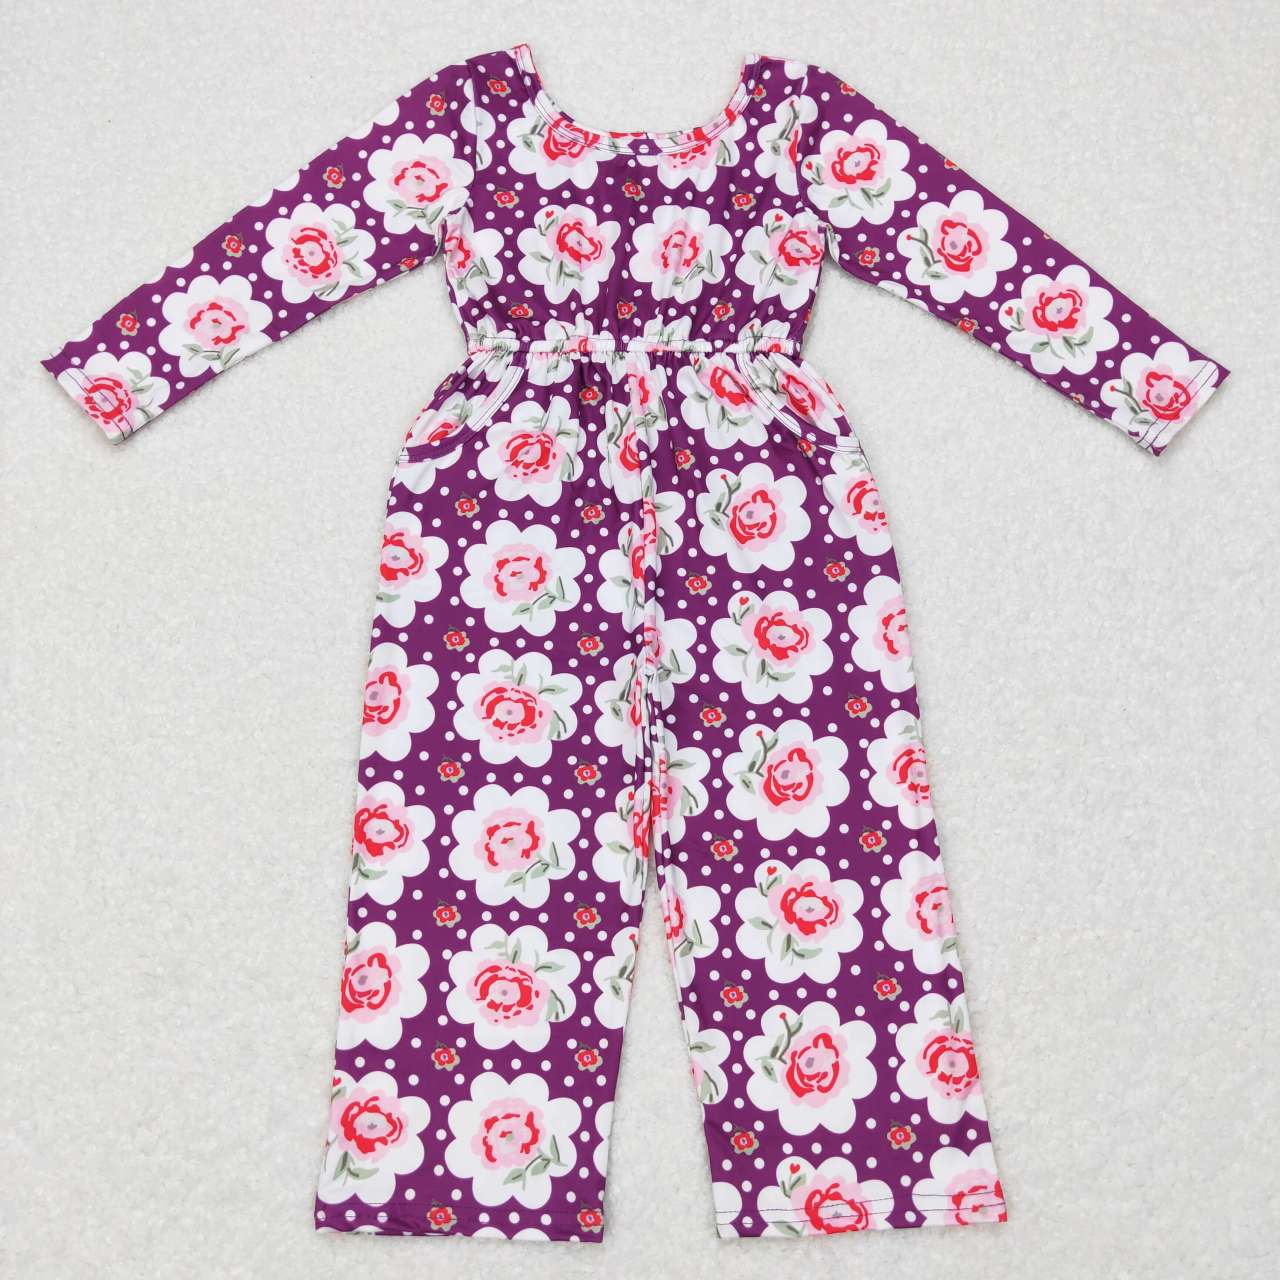 LR0716 Floral polka dot purple long-sleeved jumpsuit